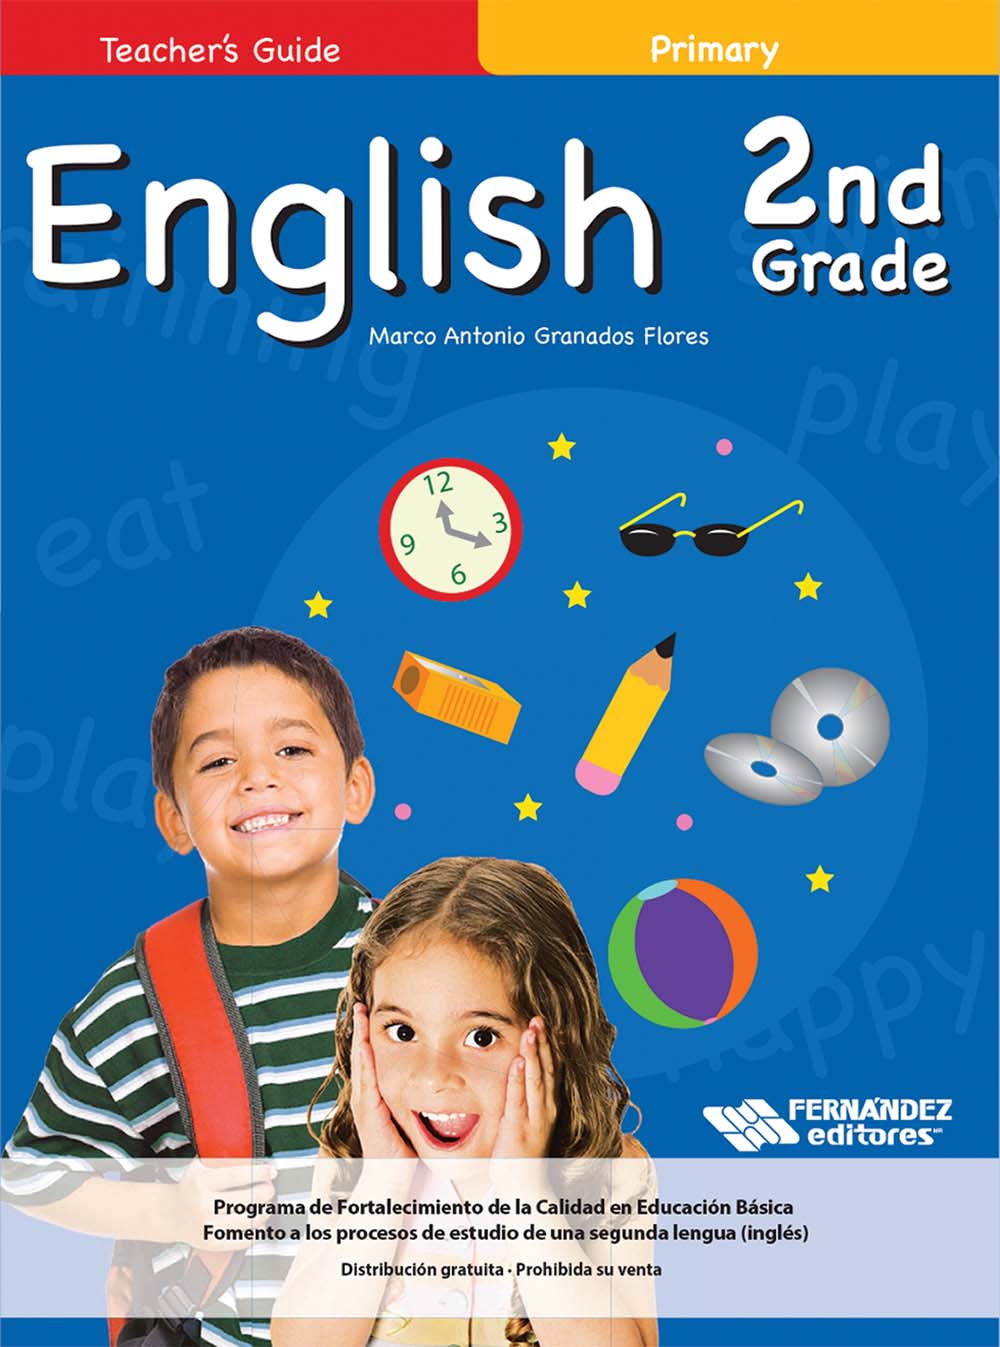 English 2nd Grade Primary Guía Didáctica, Editorial: Fernández Editores, Nivel: Primaria, Grado: 2